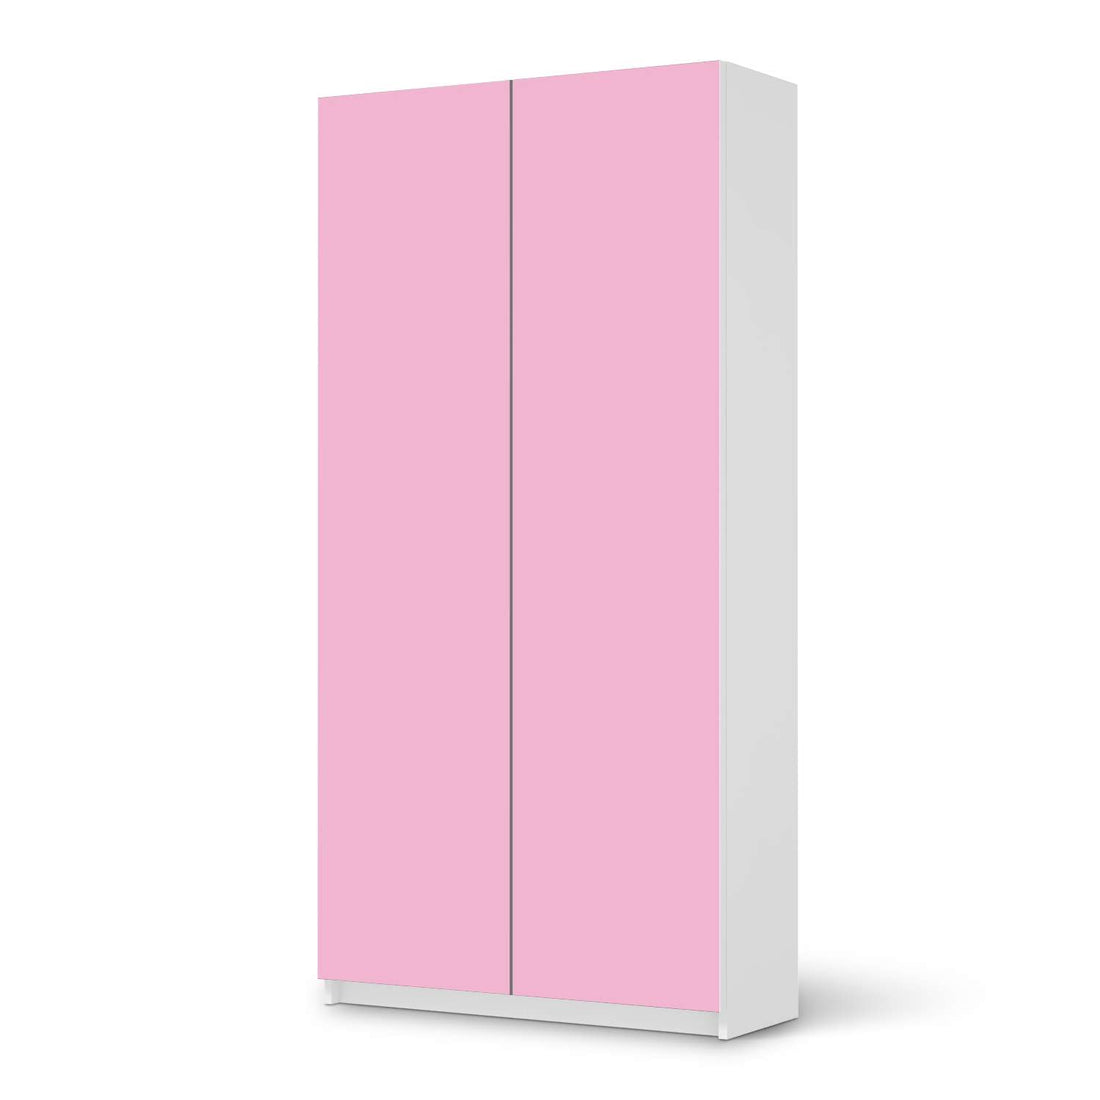 Klebefolie für Möbel Pink Light - IKEA Pax Schrank 201 cm Höhe - 2 Türen - weiss